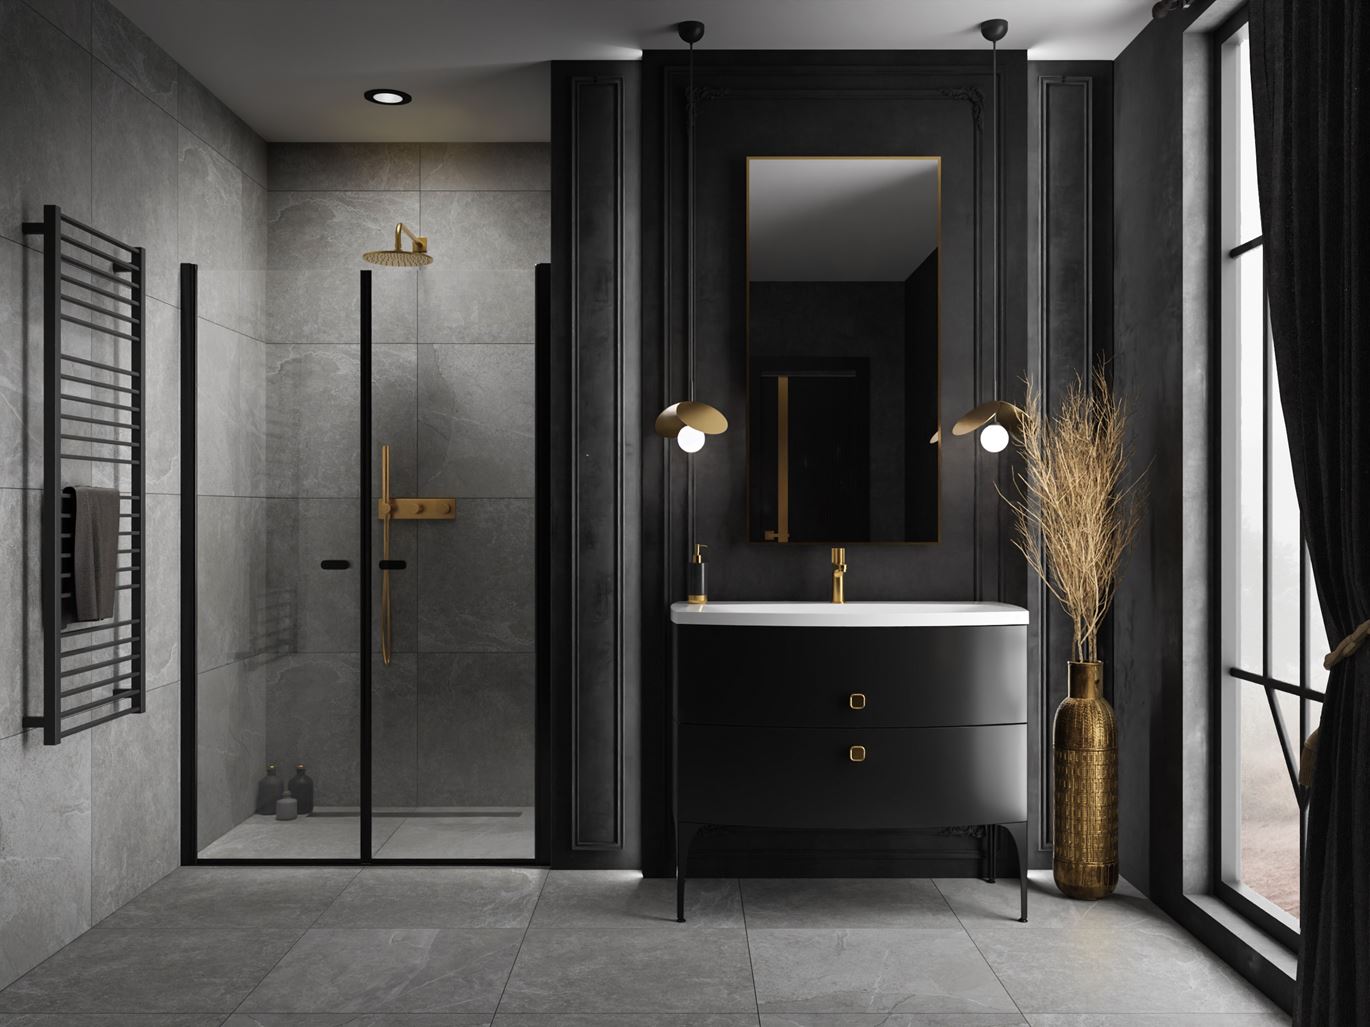 Łazienka z modną czernią w trzech stylach